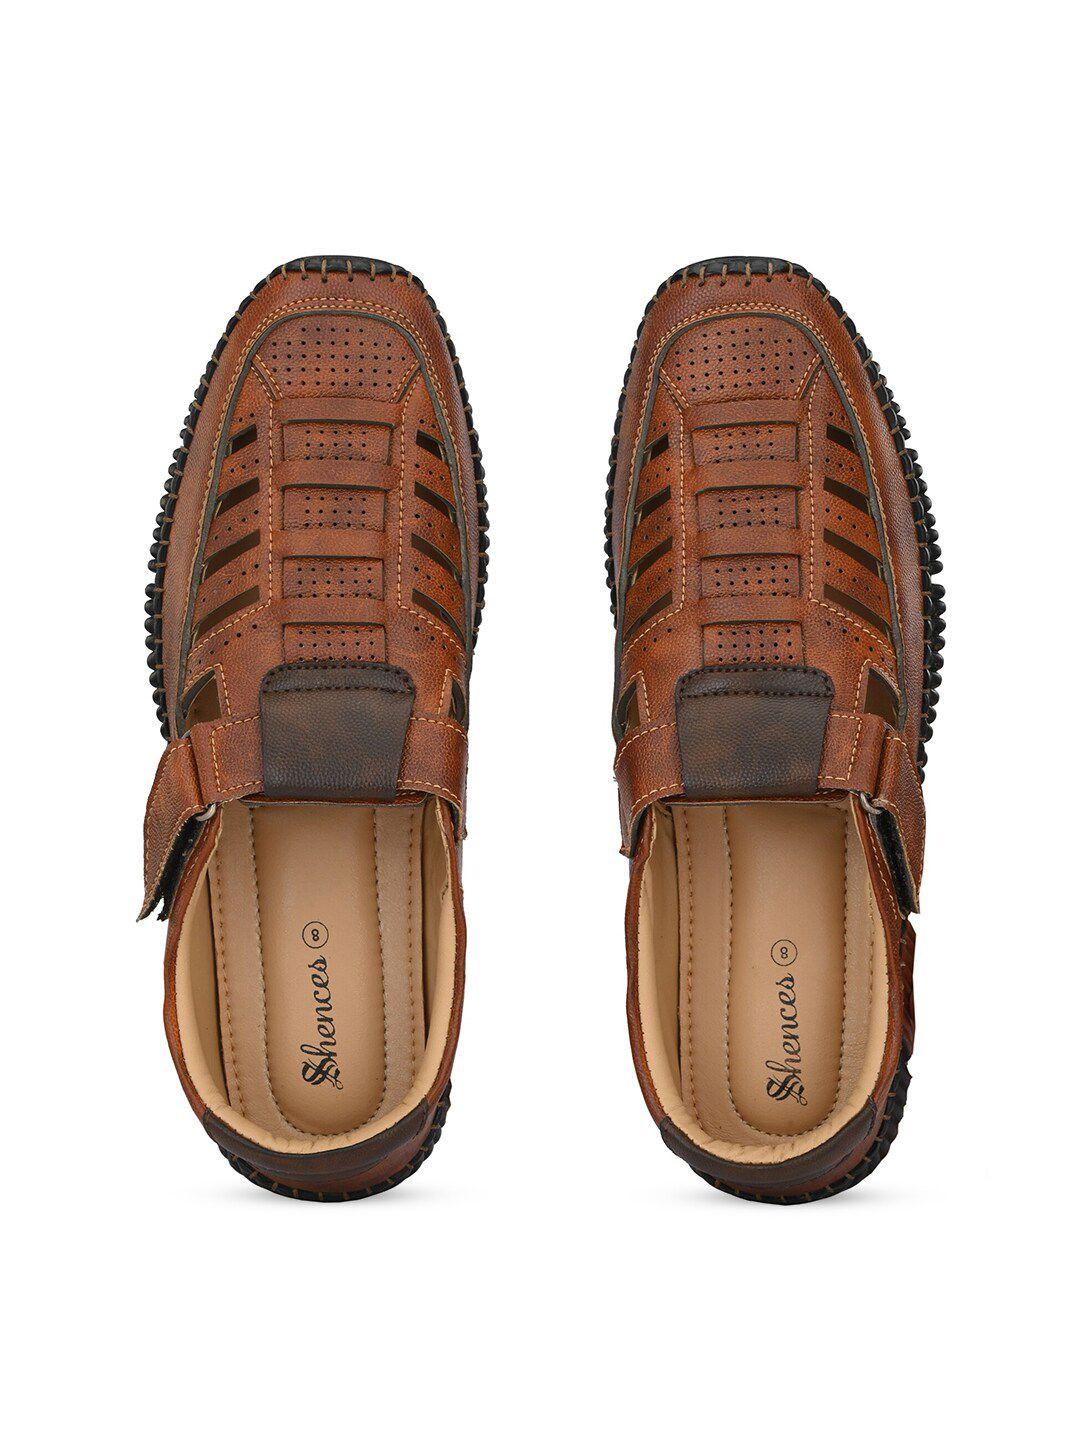 SHENCES Men Shoe-Style Sandals